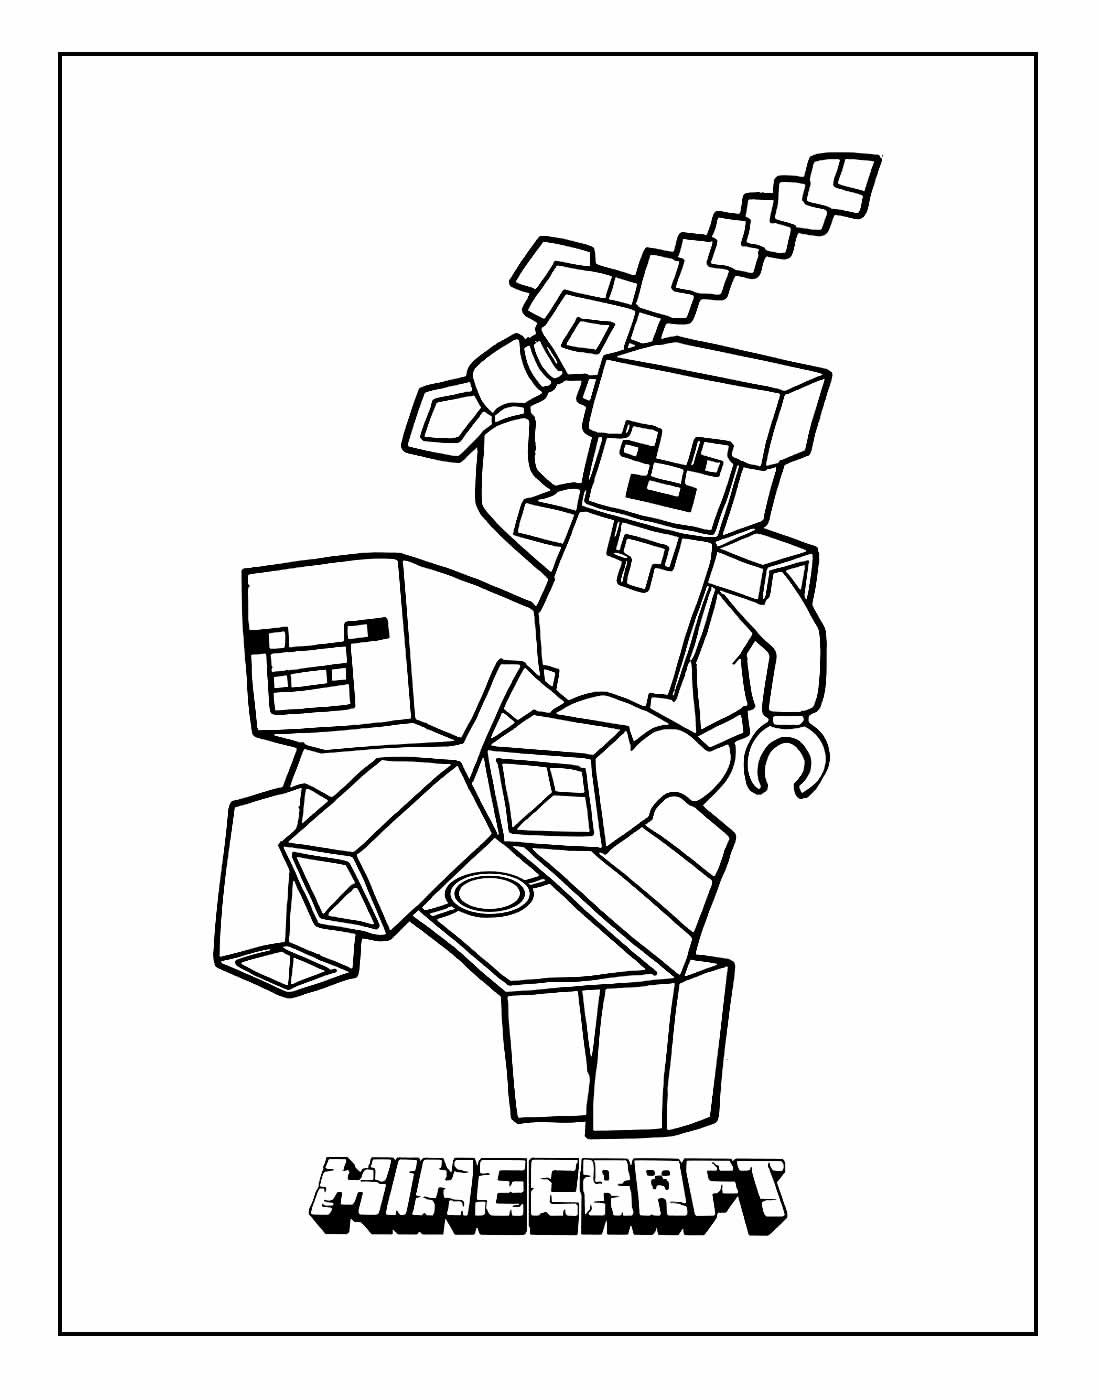 Desenhos de Minecraft para colorir